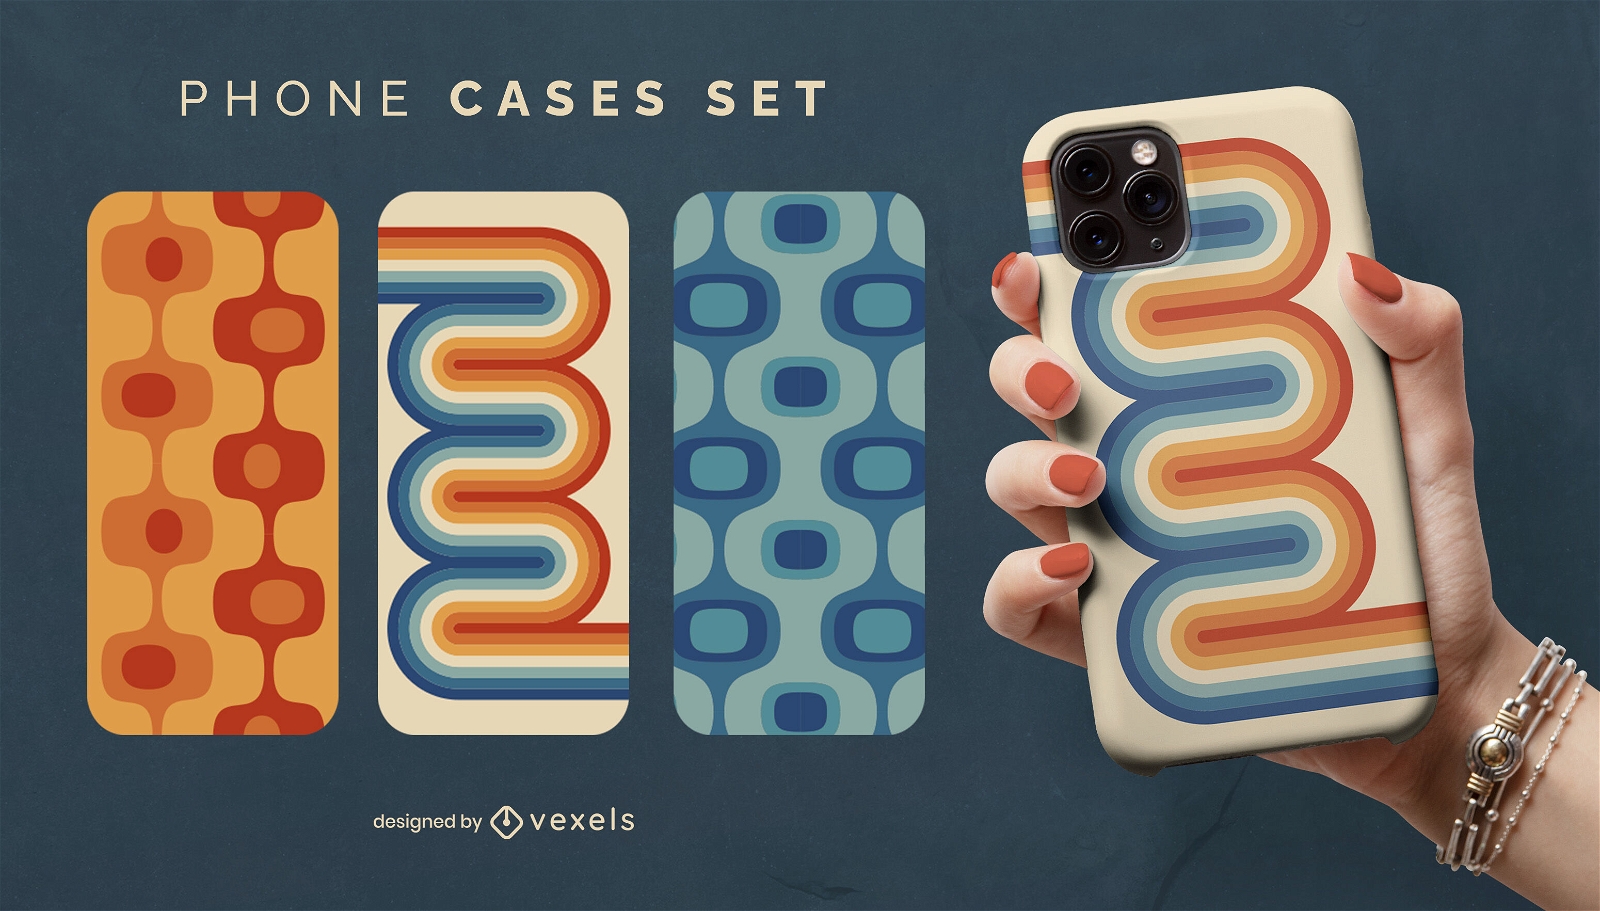 Retro phone cases set design